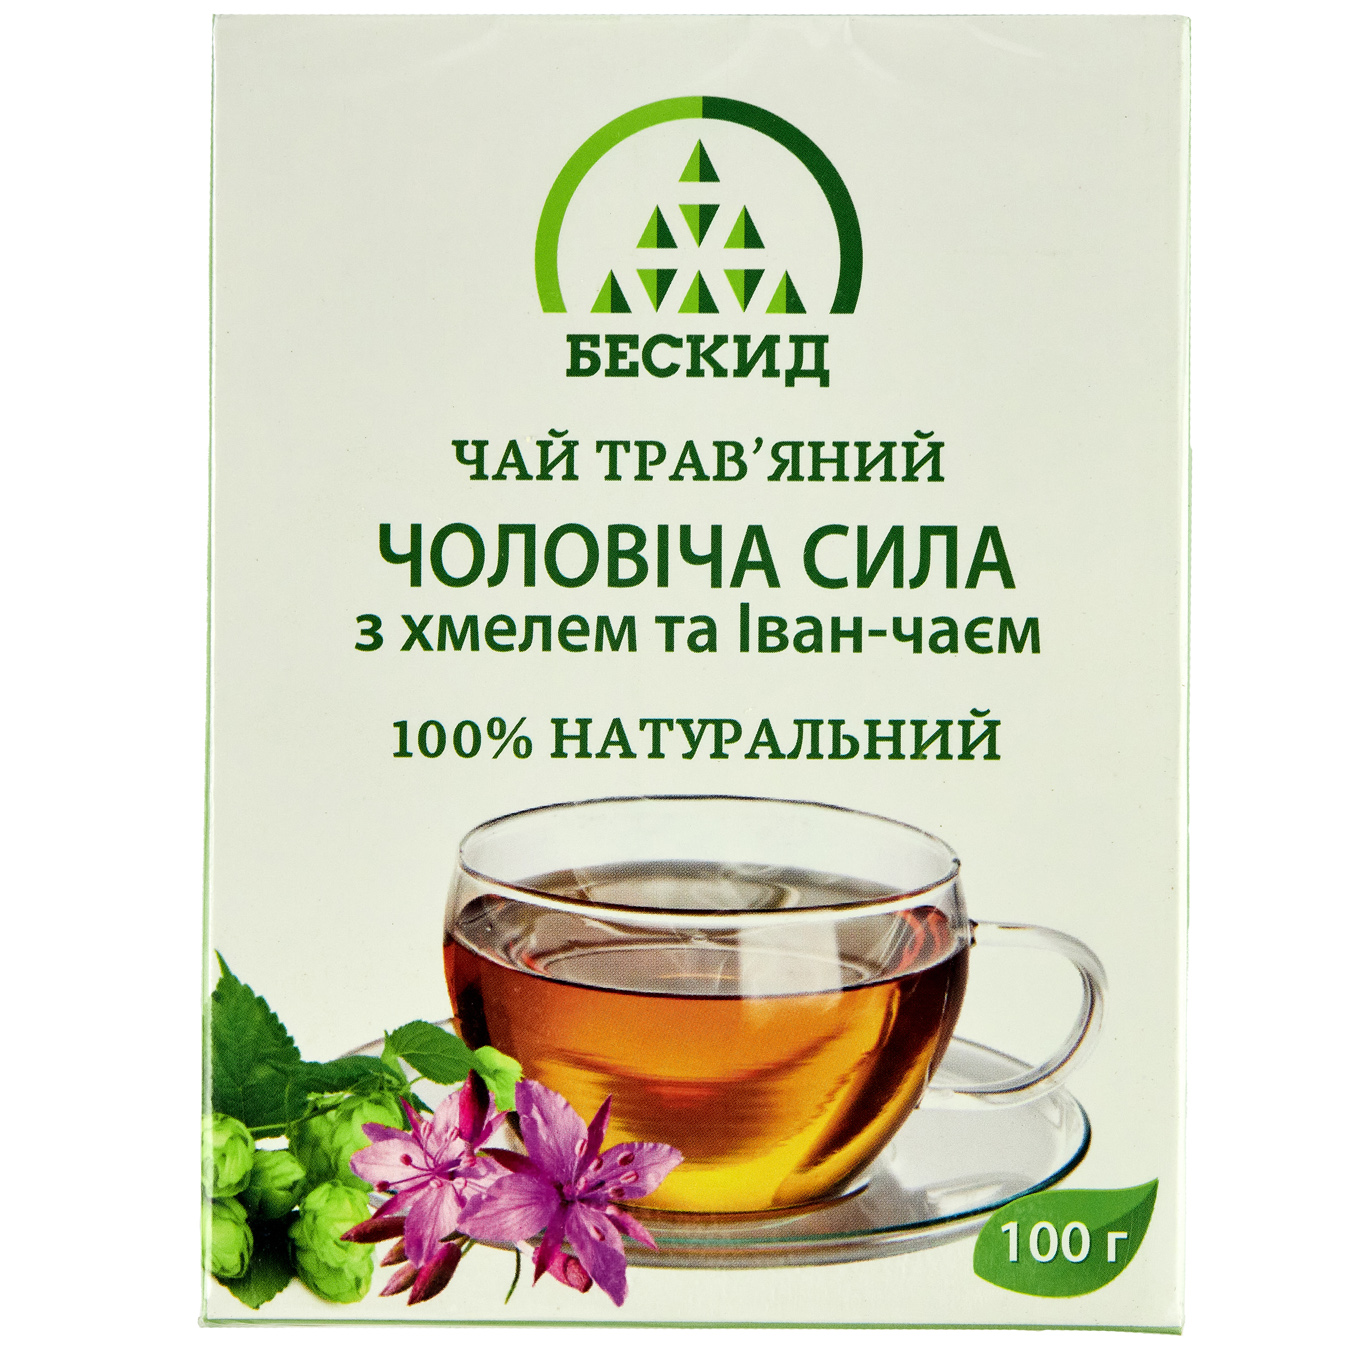 Чай травяной Бескид Мужская сила с хмелем и Иван-чаем 100г